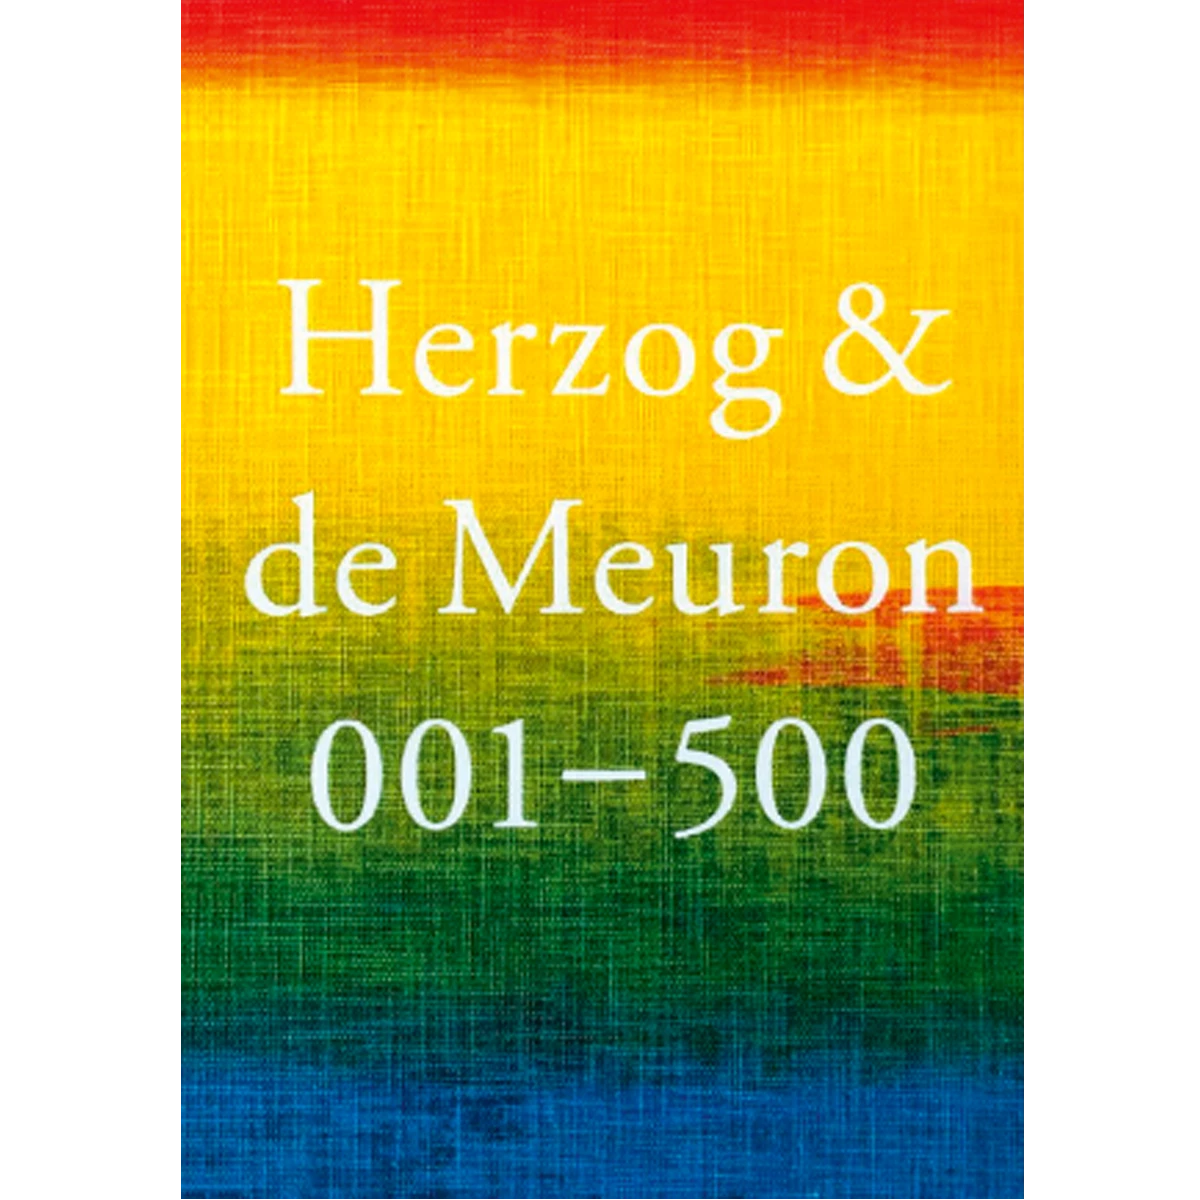 Herzog & de Meuron, 001-500